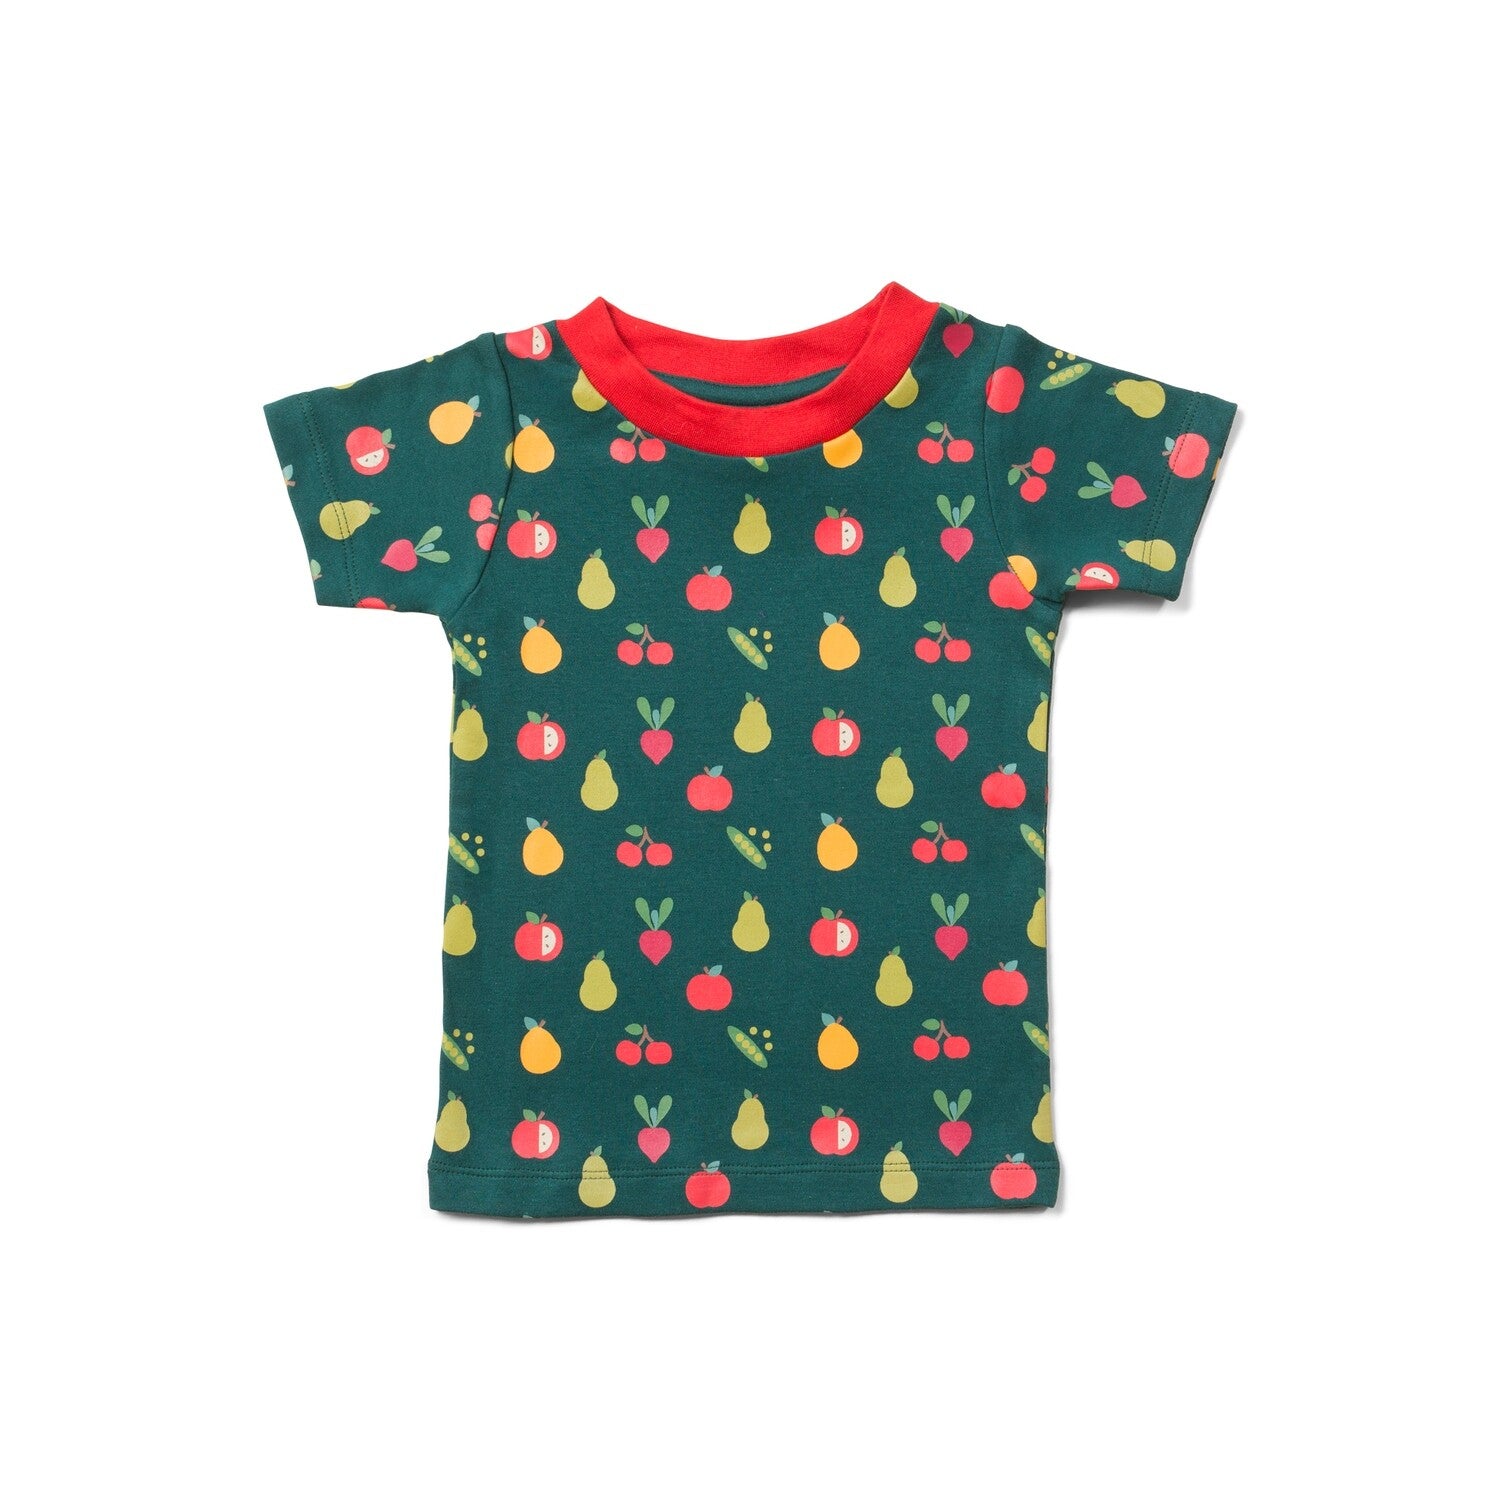 Tamsiai žali vaikiški marškinėliai trumpomis rankovėmis. Marginti vaisių ir daržovių piešinėliais.